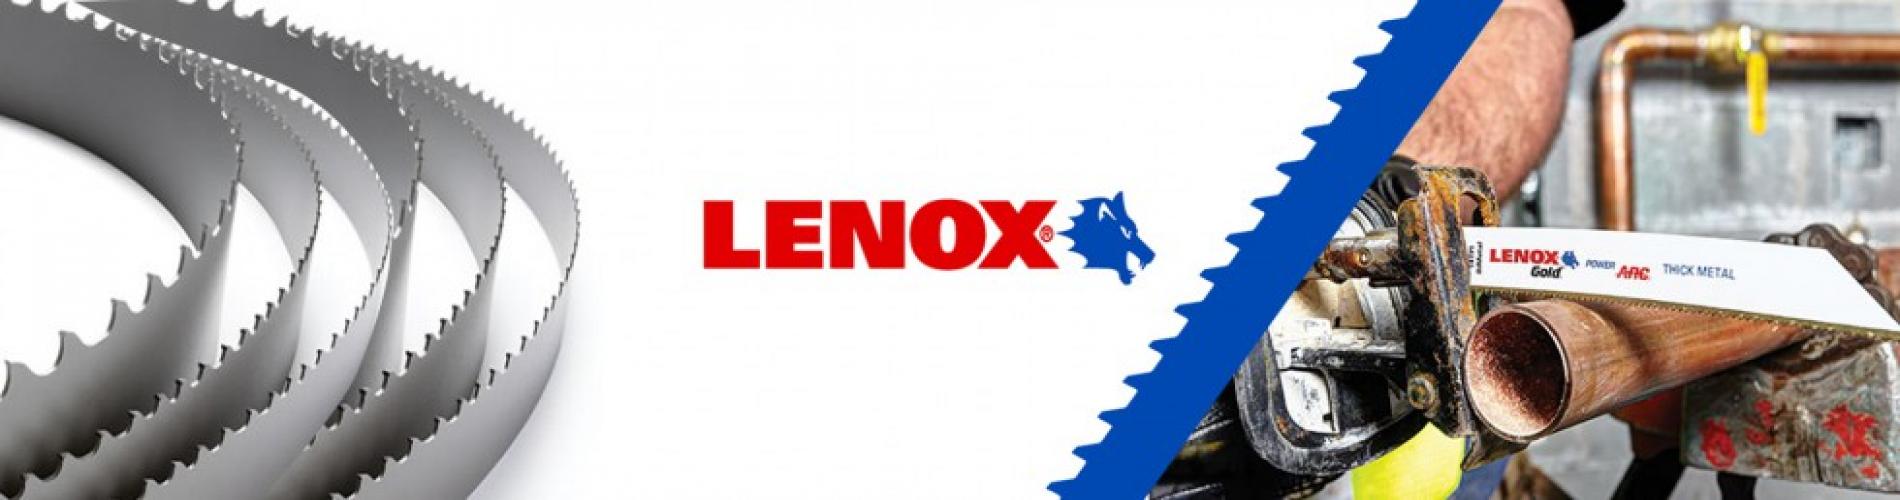 lenox_resp1